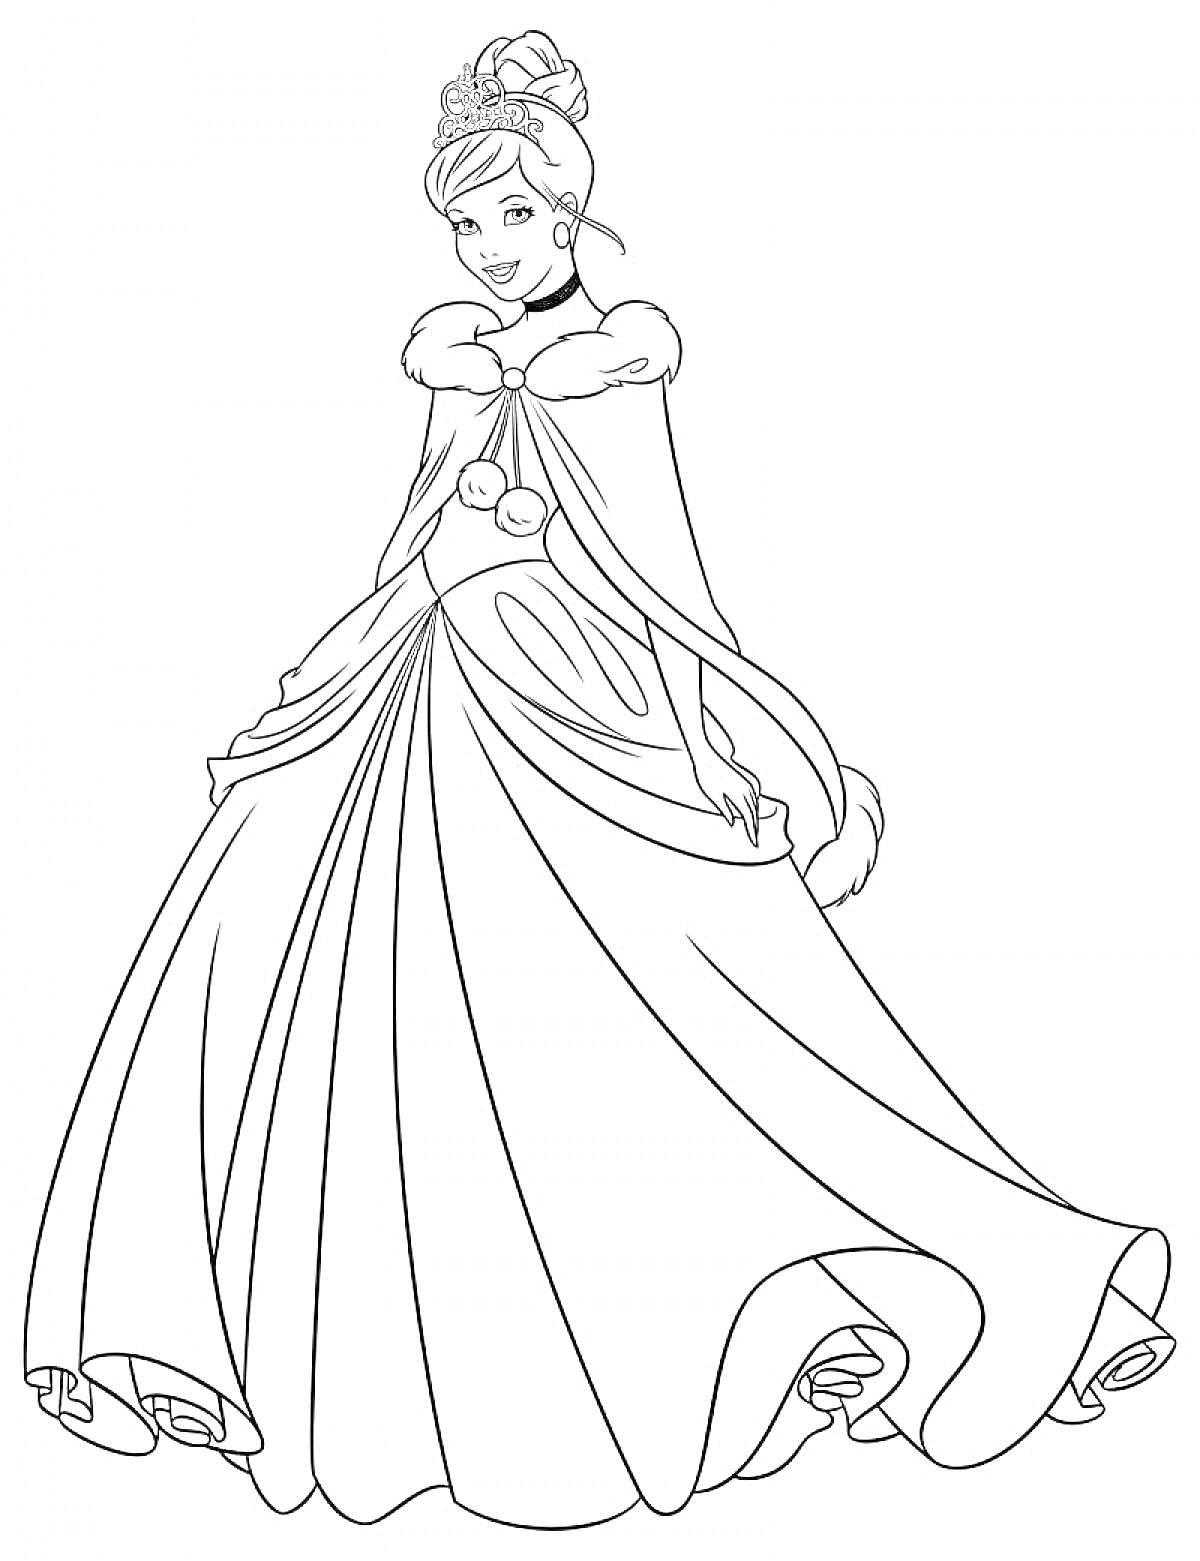 Раскраска Принцесса в роскошном платье с меховой накидкой